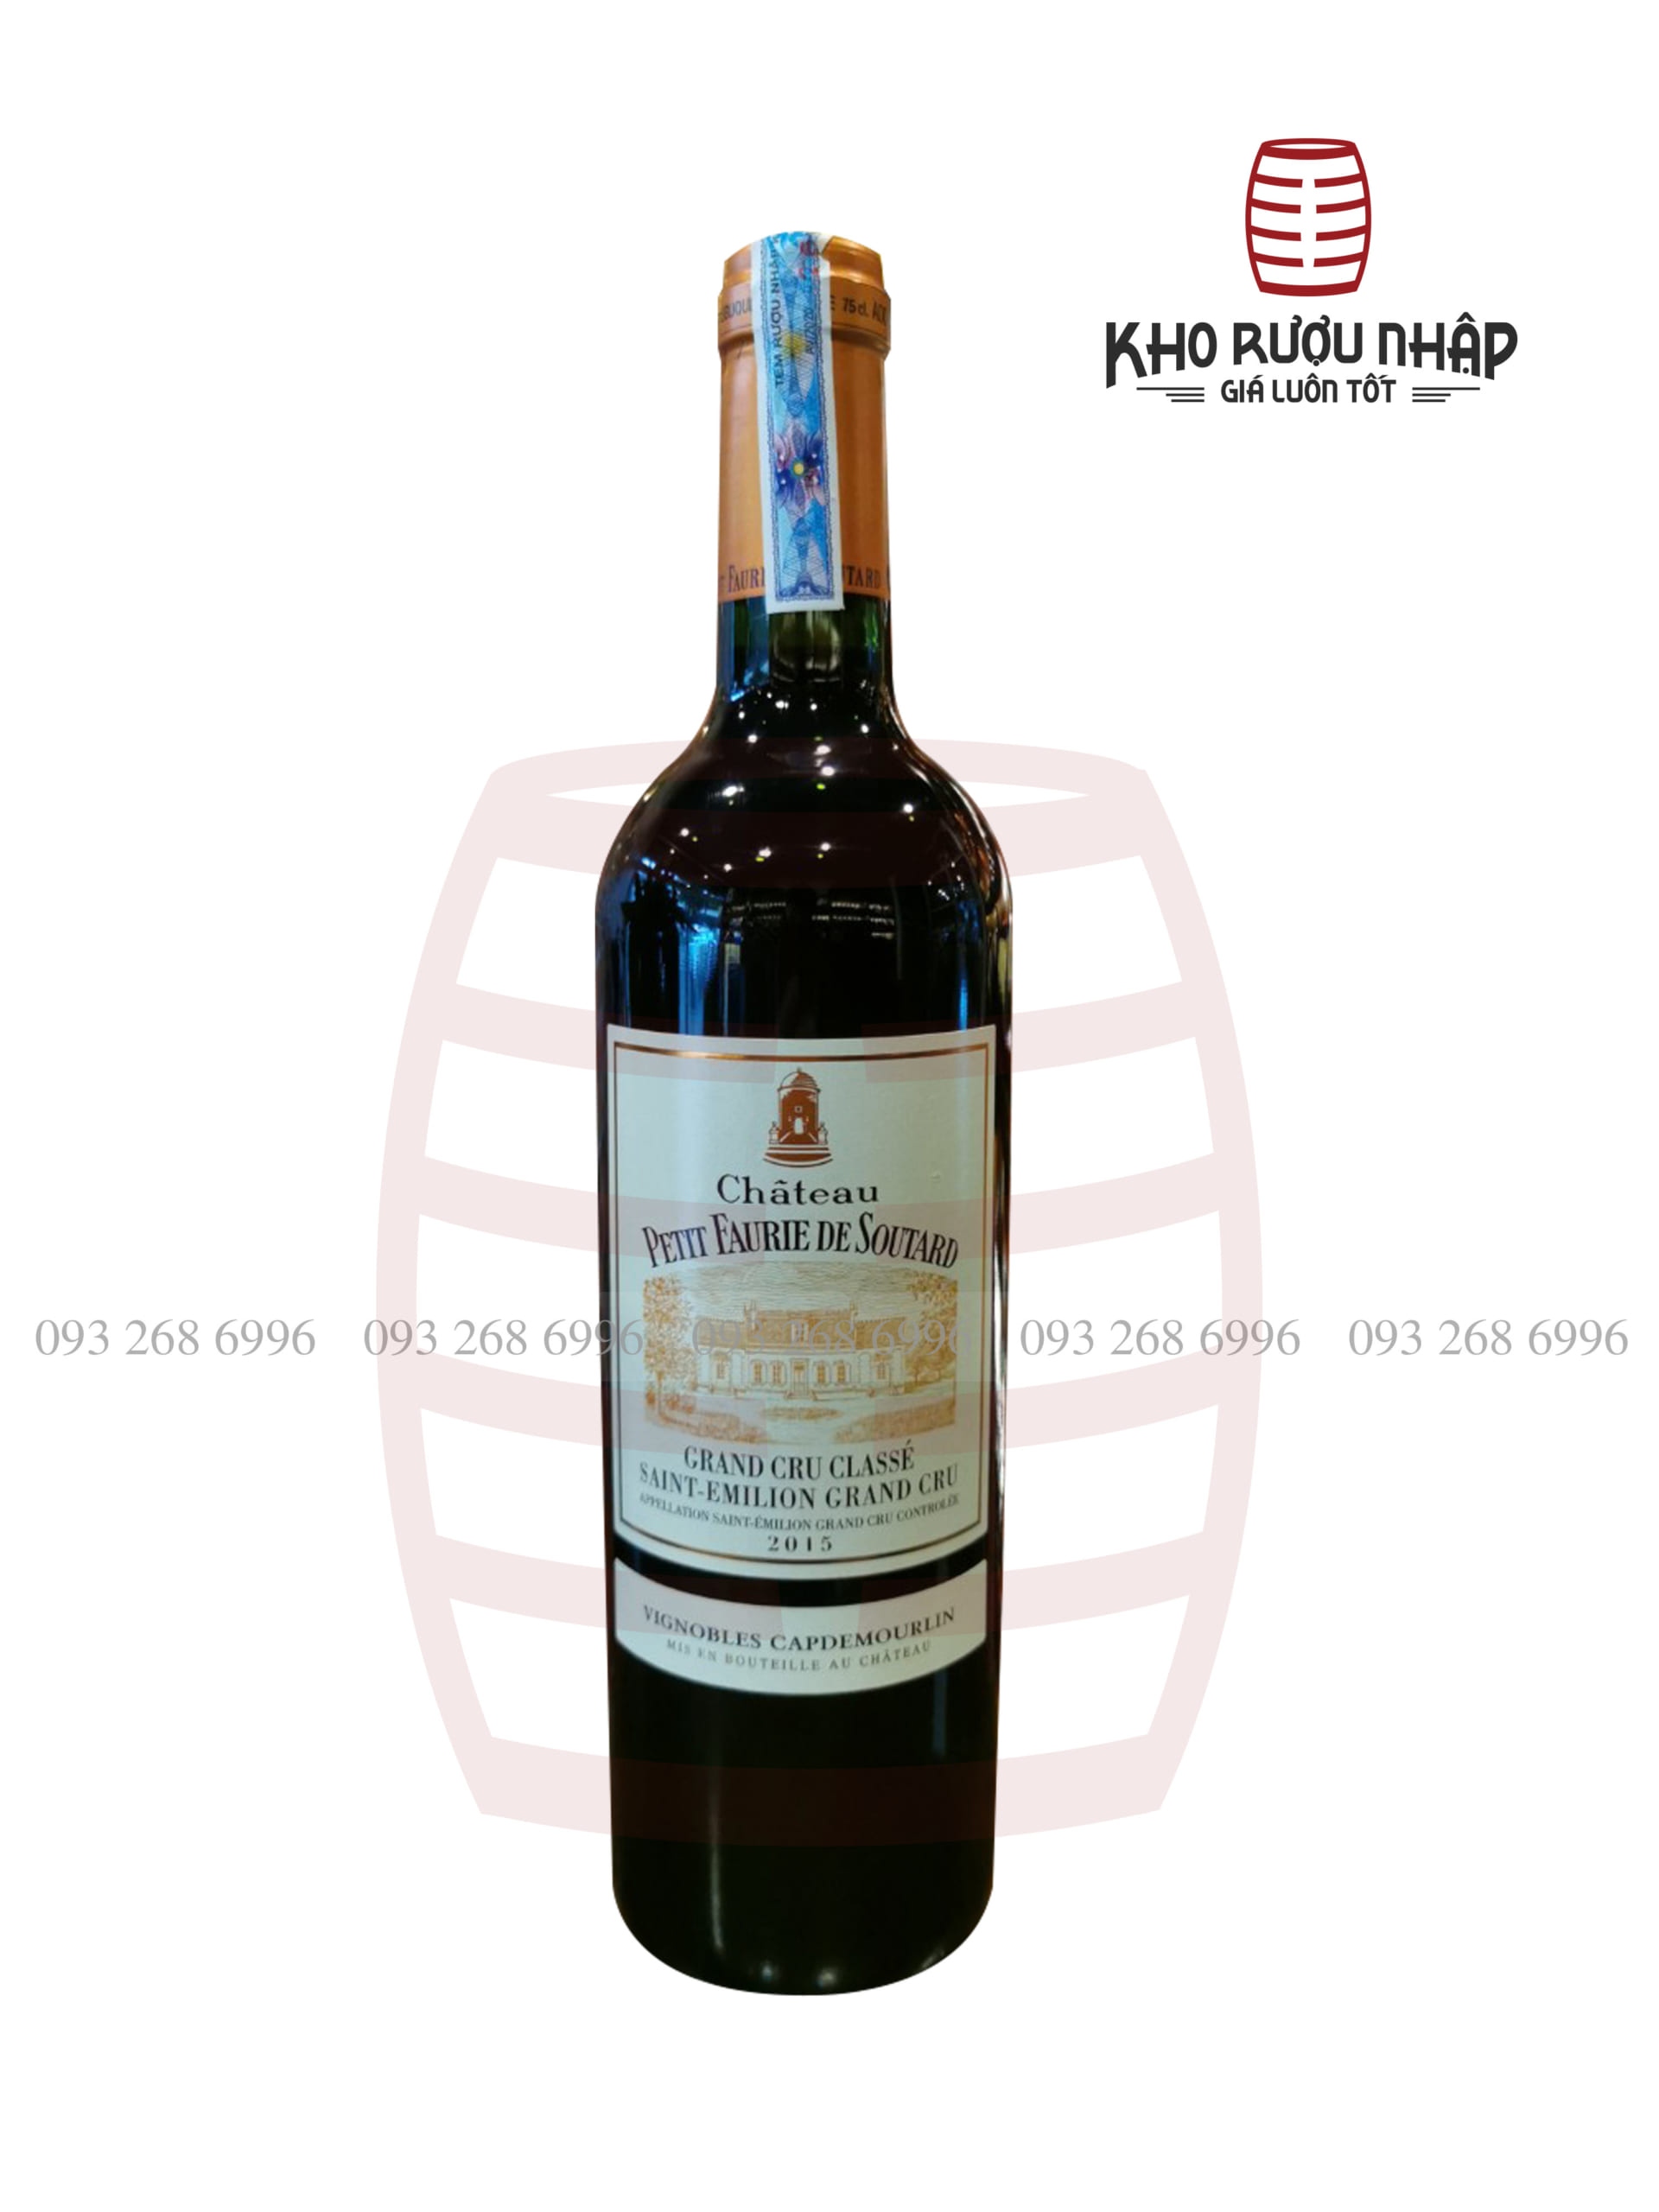 Rượu vang Chateau Petit Faurie De Soutard – BM – 01900 cao cấp